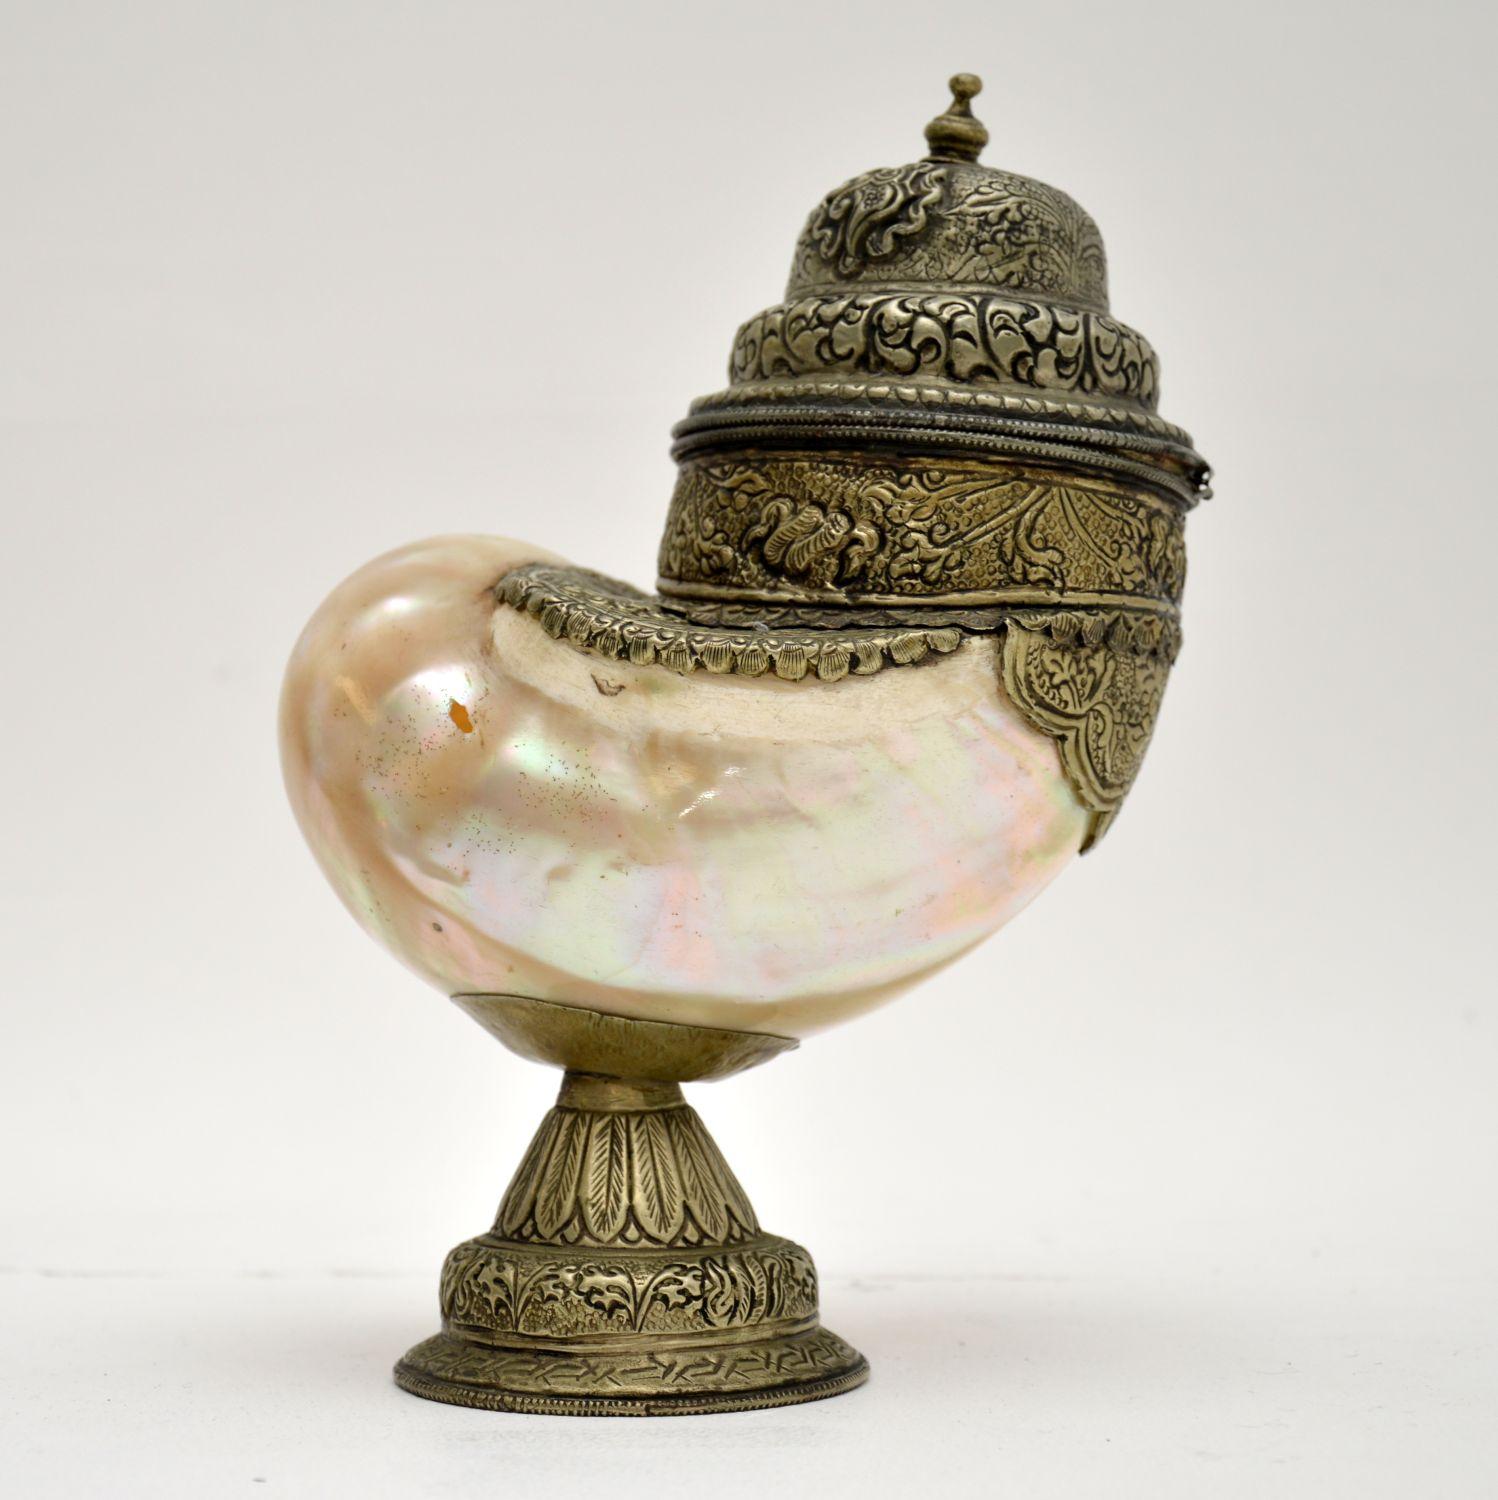 Ein seltenes und schönes Ornament, dies ist eine antike Nautilus Muschel Tasse mit Deckel, mit Silber montiert. Sie wurde wahrscheinlich in Indien hergestellt und stammt aus dem späten 19. Jahrhundert.
Sie ist wunderschön mit feinen Details